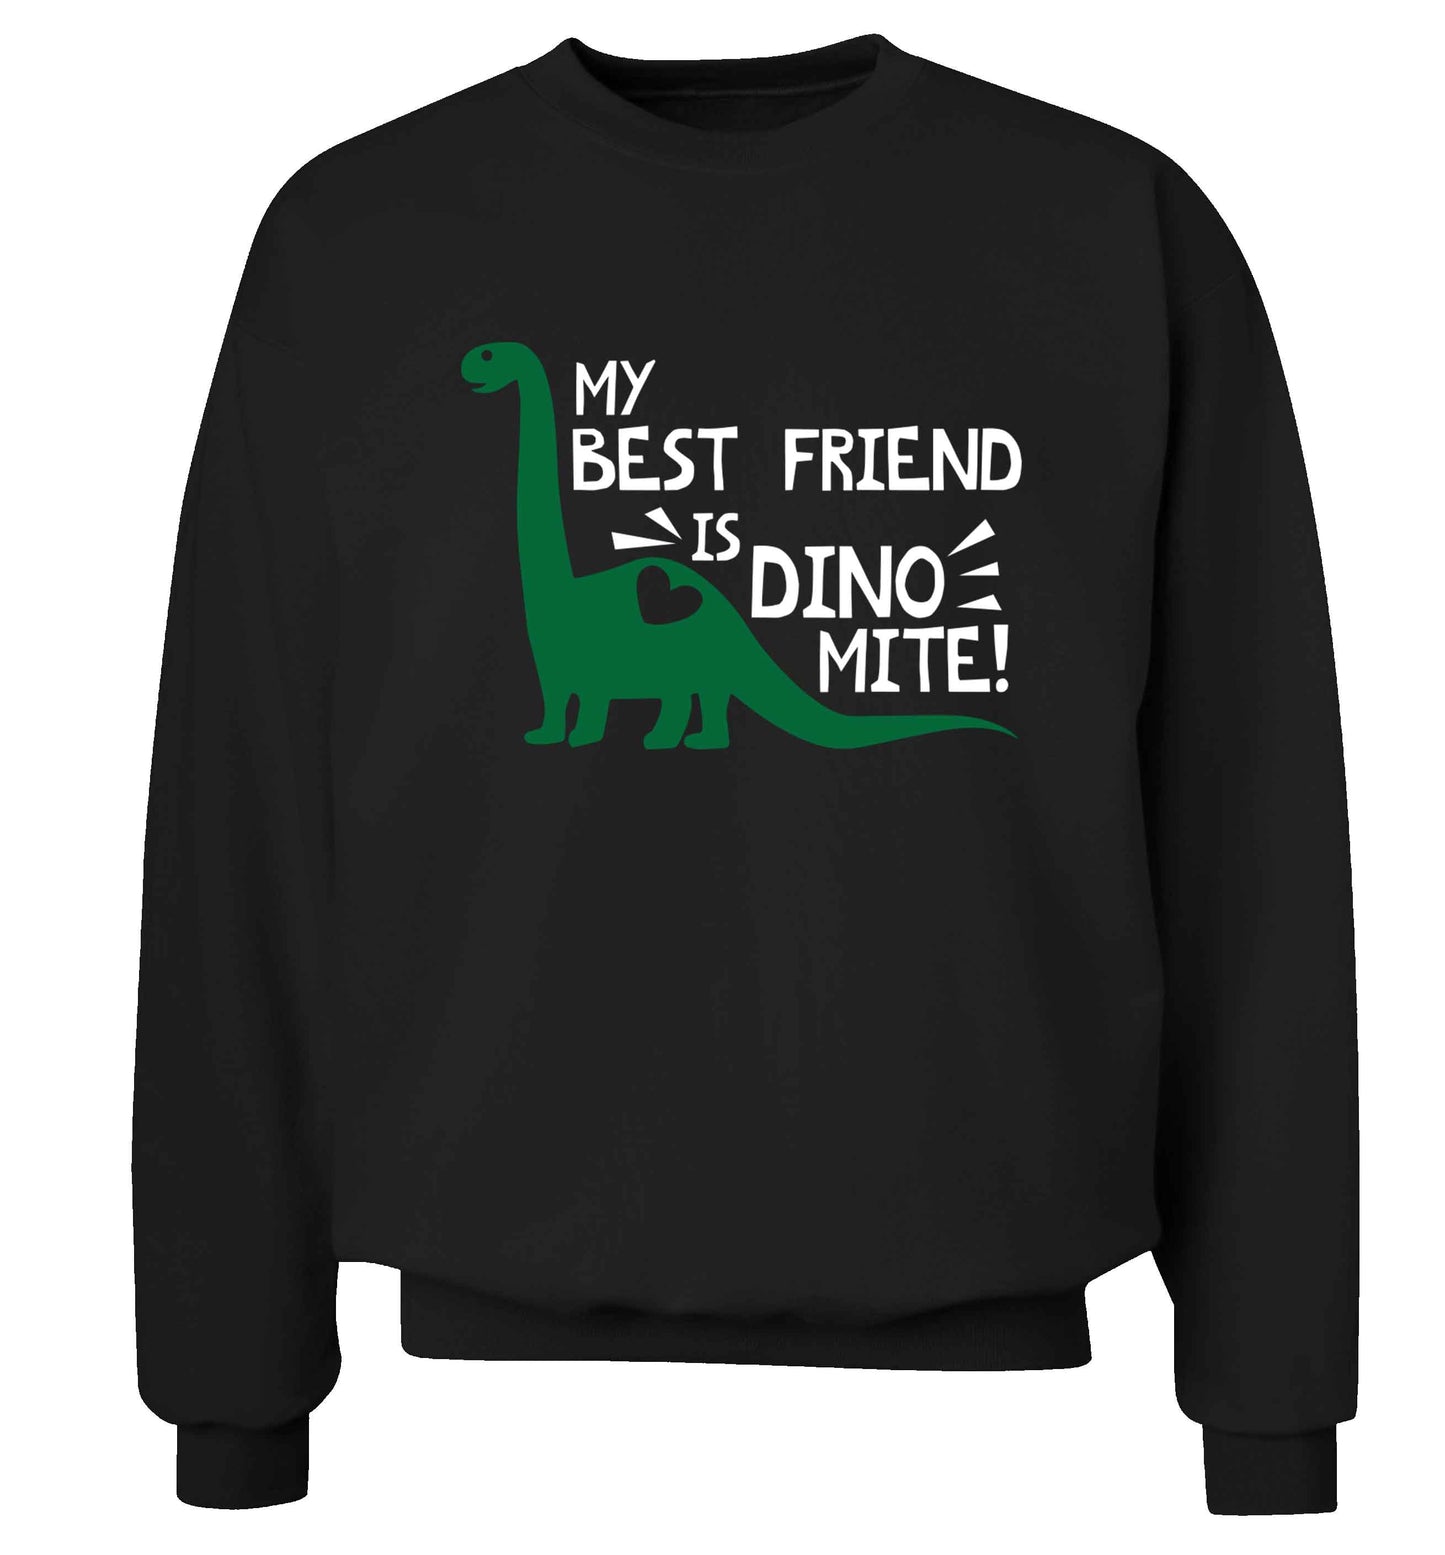 My best friend is dinomite! Adult's unisex black Sweater 2XL